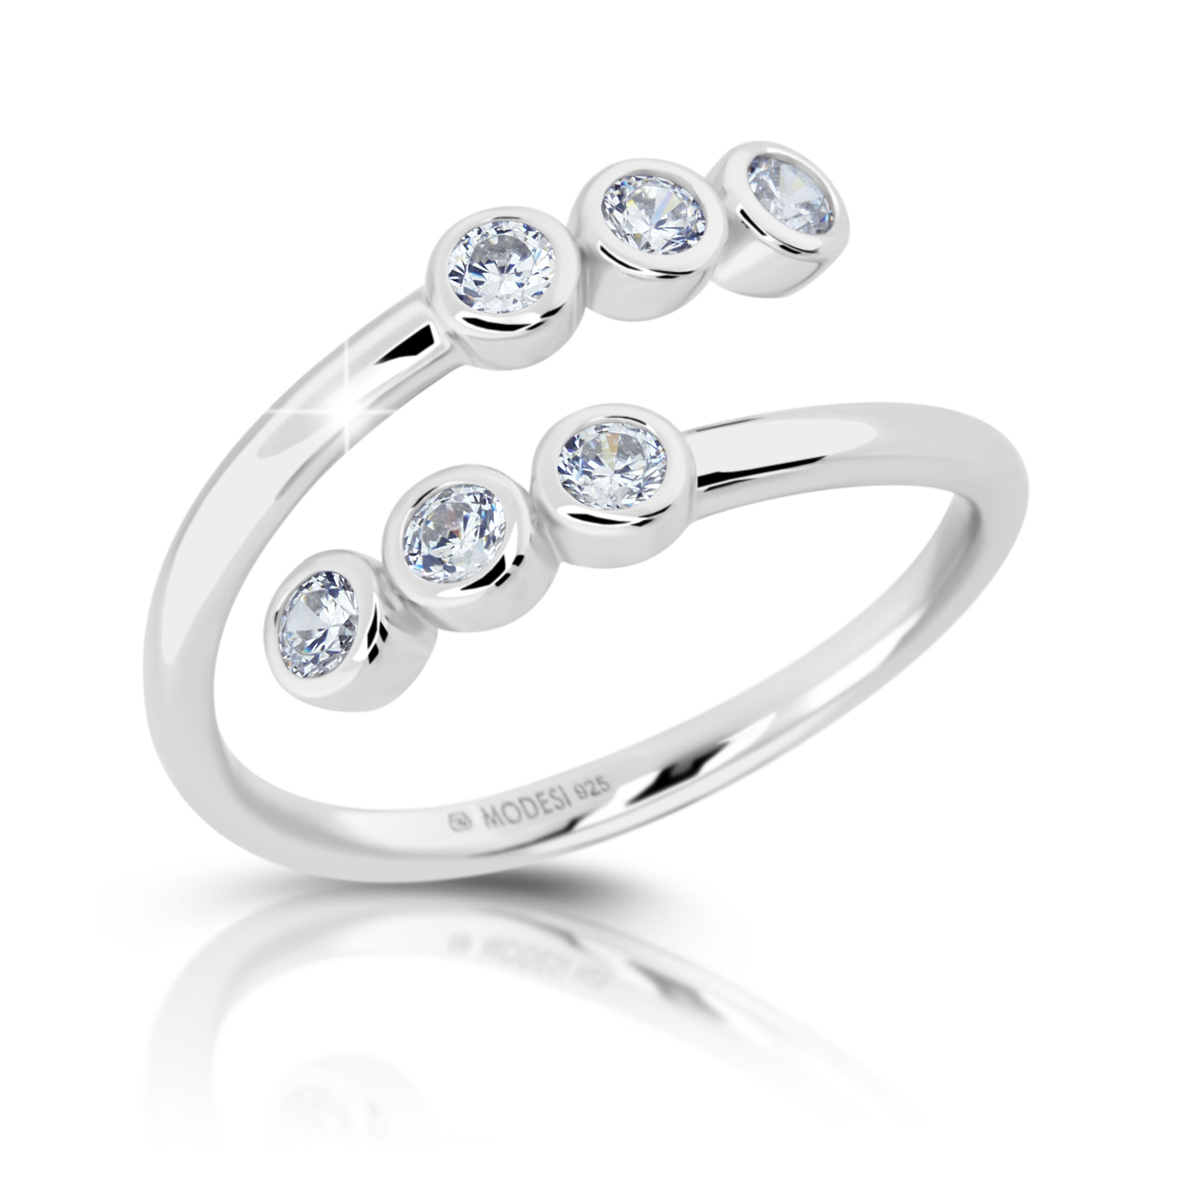 Modesi Půvabný stříbrný prsten se zirkony M01013 50 mm